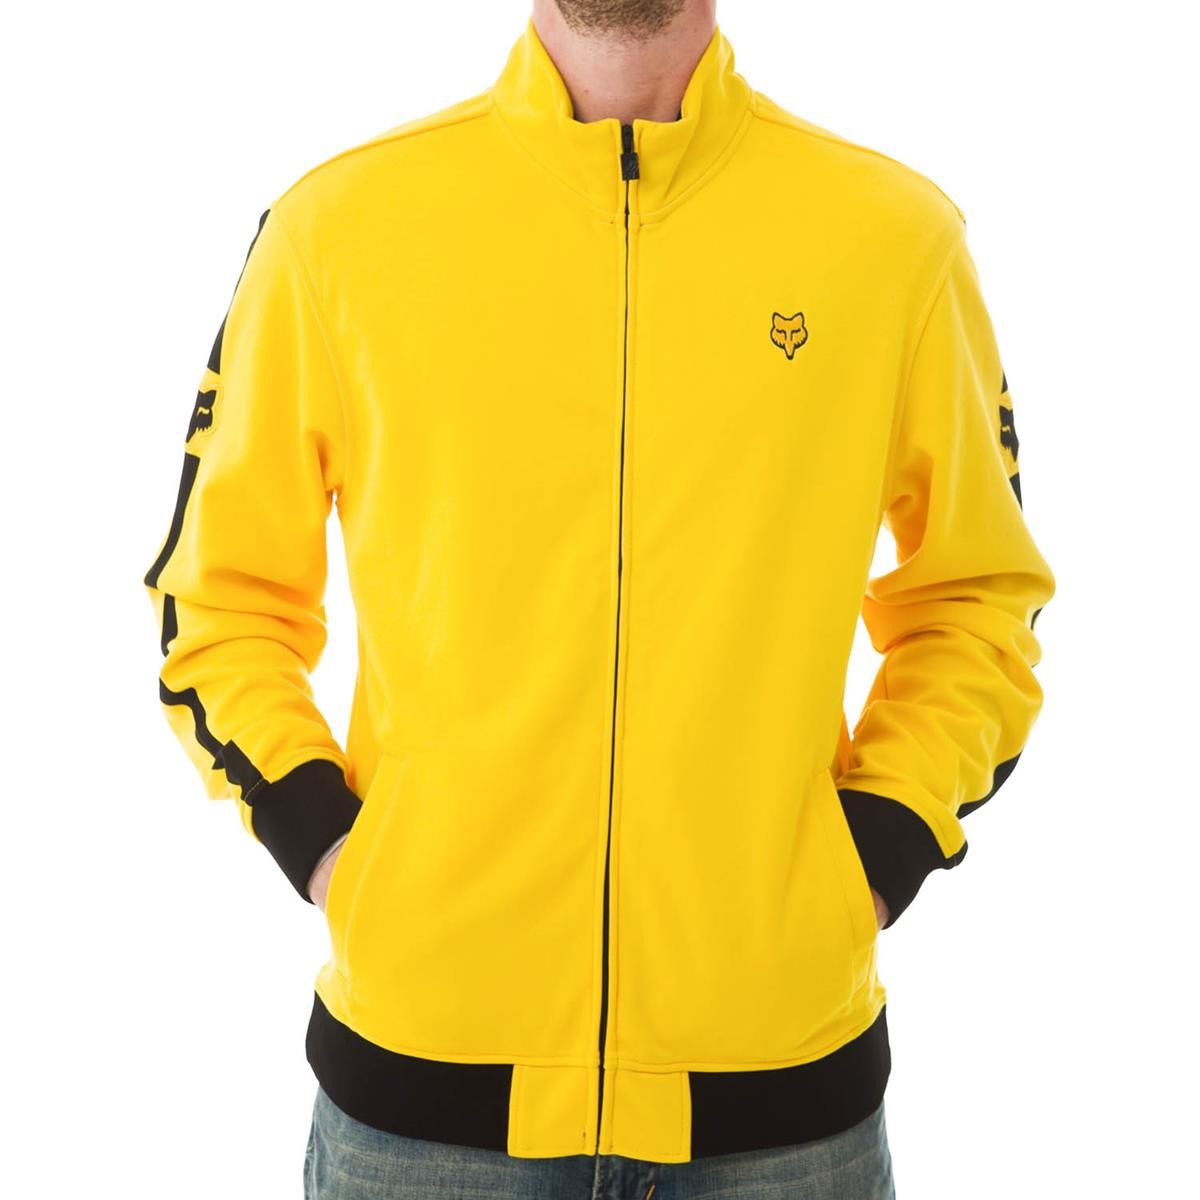 Freizeit/Streetwear Bekleidung-Jacken/Westen - Fox Jacke Moto-X Track Gold